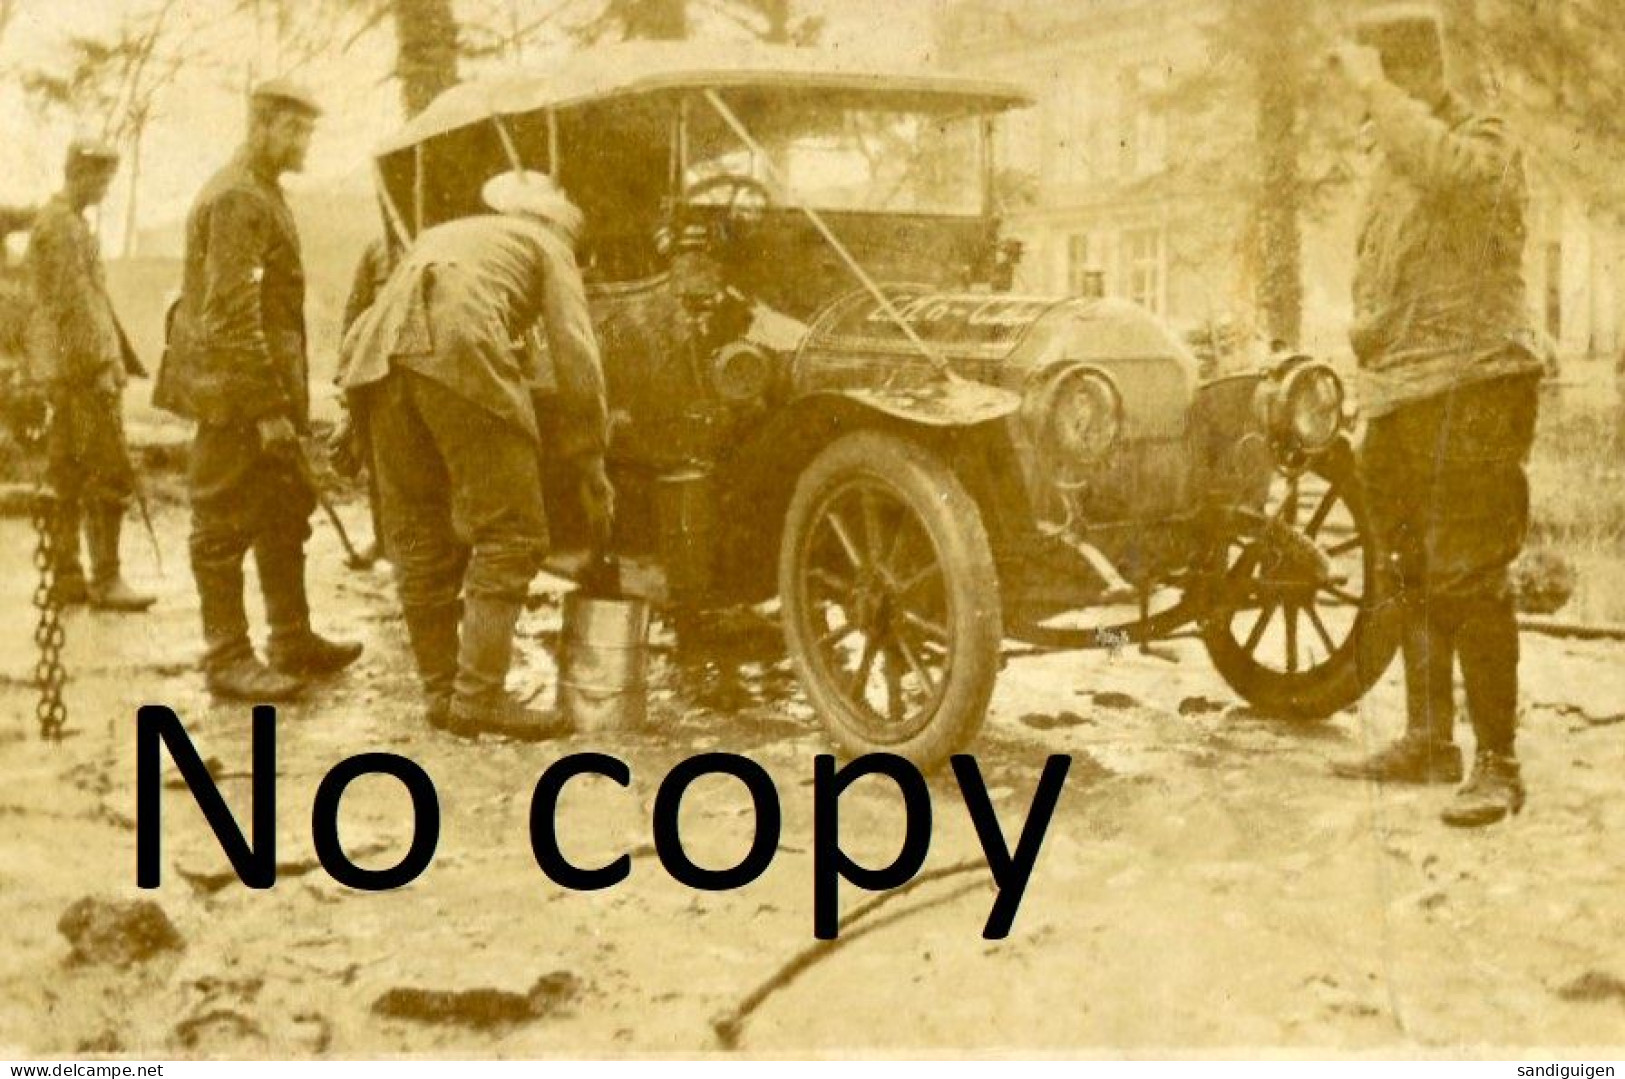 PHOTO FRANCAISE - NETTOYAGE DE L'AUTOMOBILE PAR LES PRISONNIERS A LEMMES PRES DE SOUILLY - VERDUN MEUSE GUERRE 1914 1918 - Guerre, Militaire